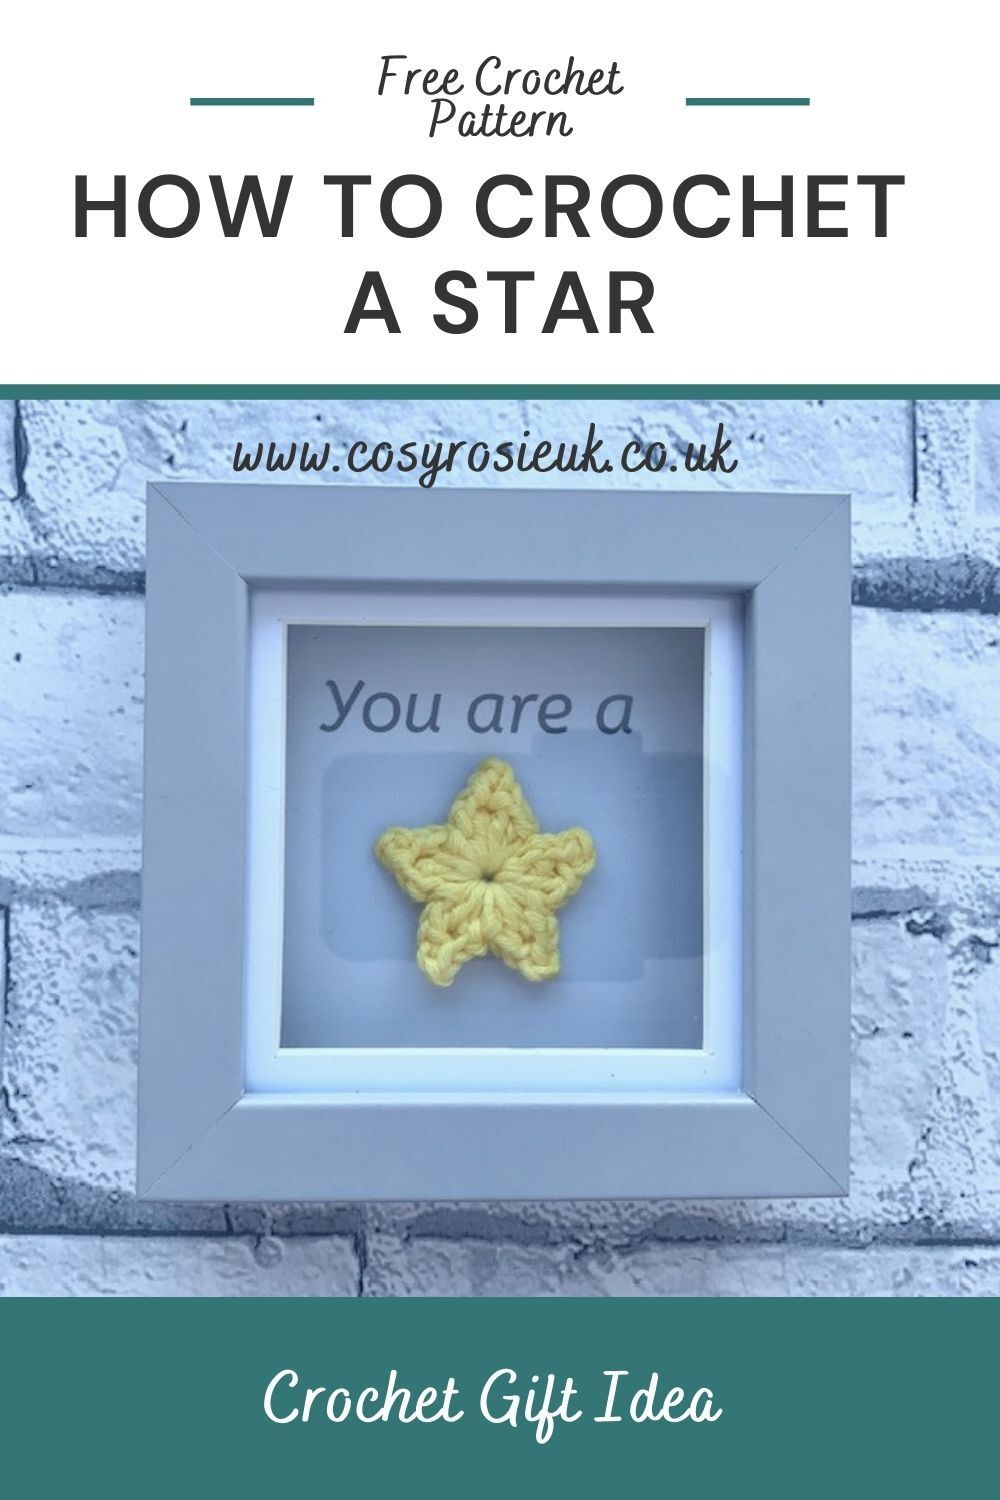 Crochet a star gift idea